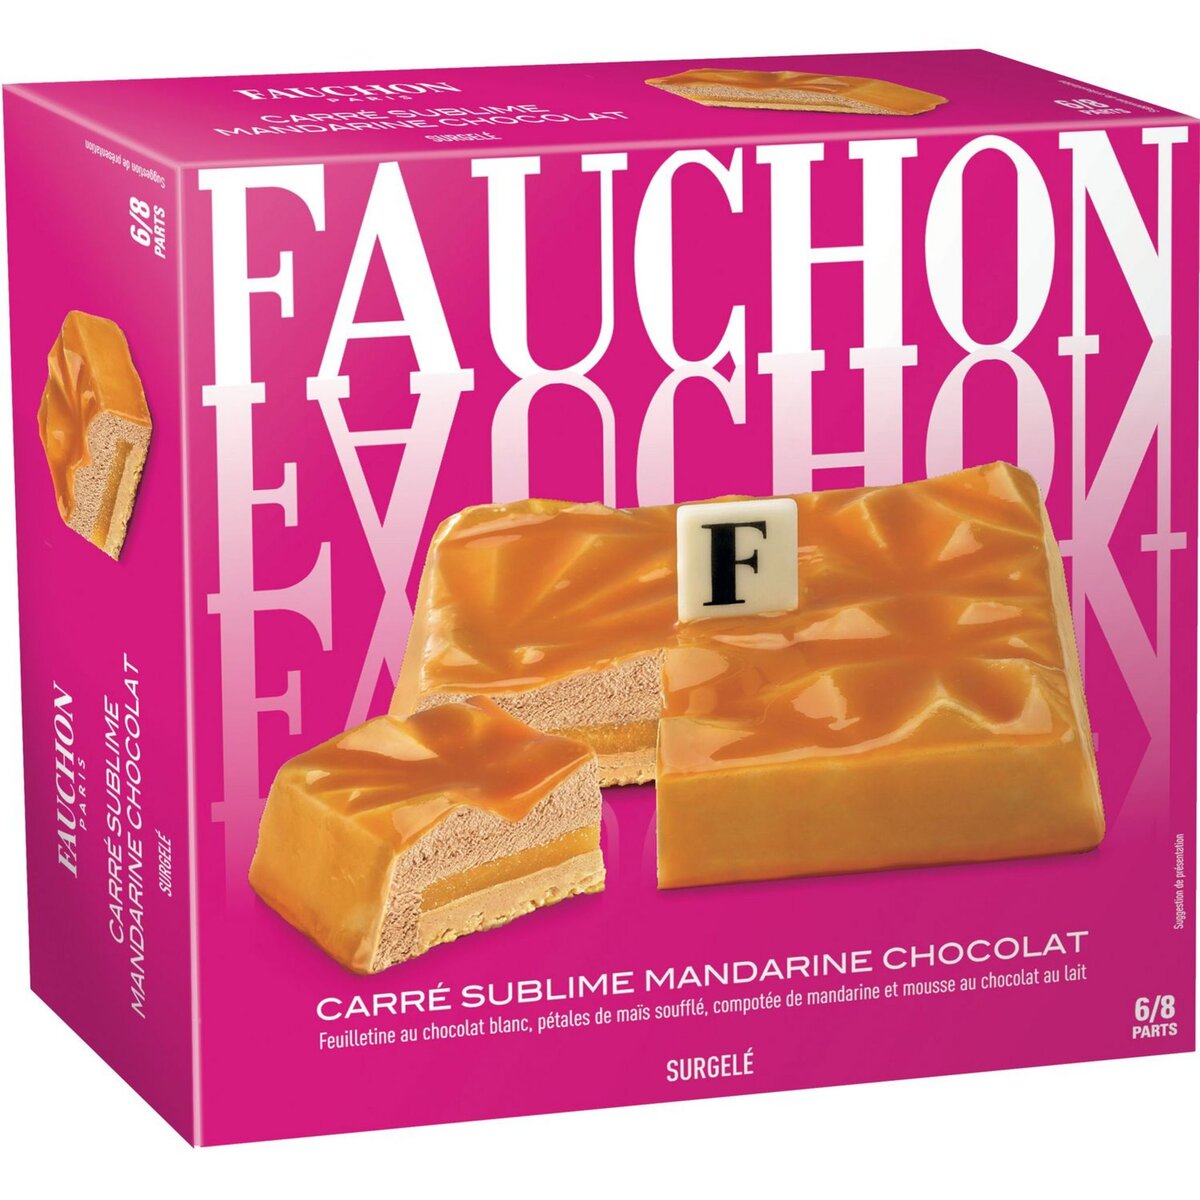 FAUCHON Fauchon Carré sublime mandarine chocolat 440g 6-8 parts 6-8 parts 440g